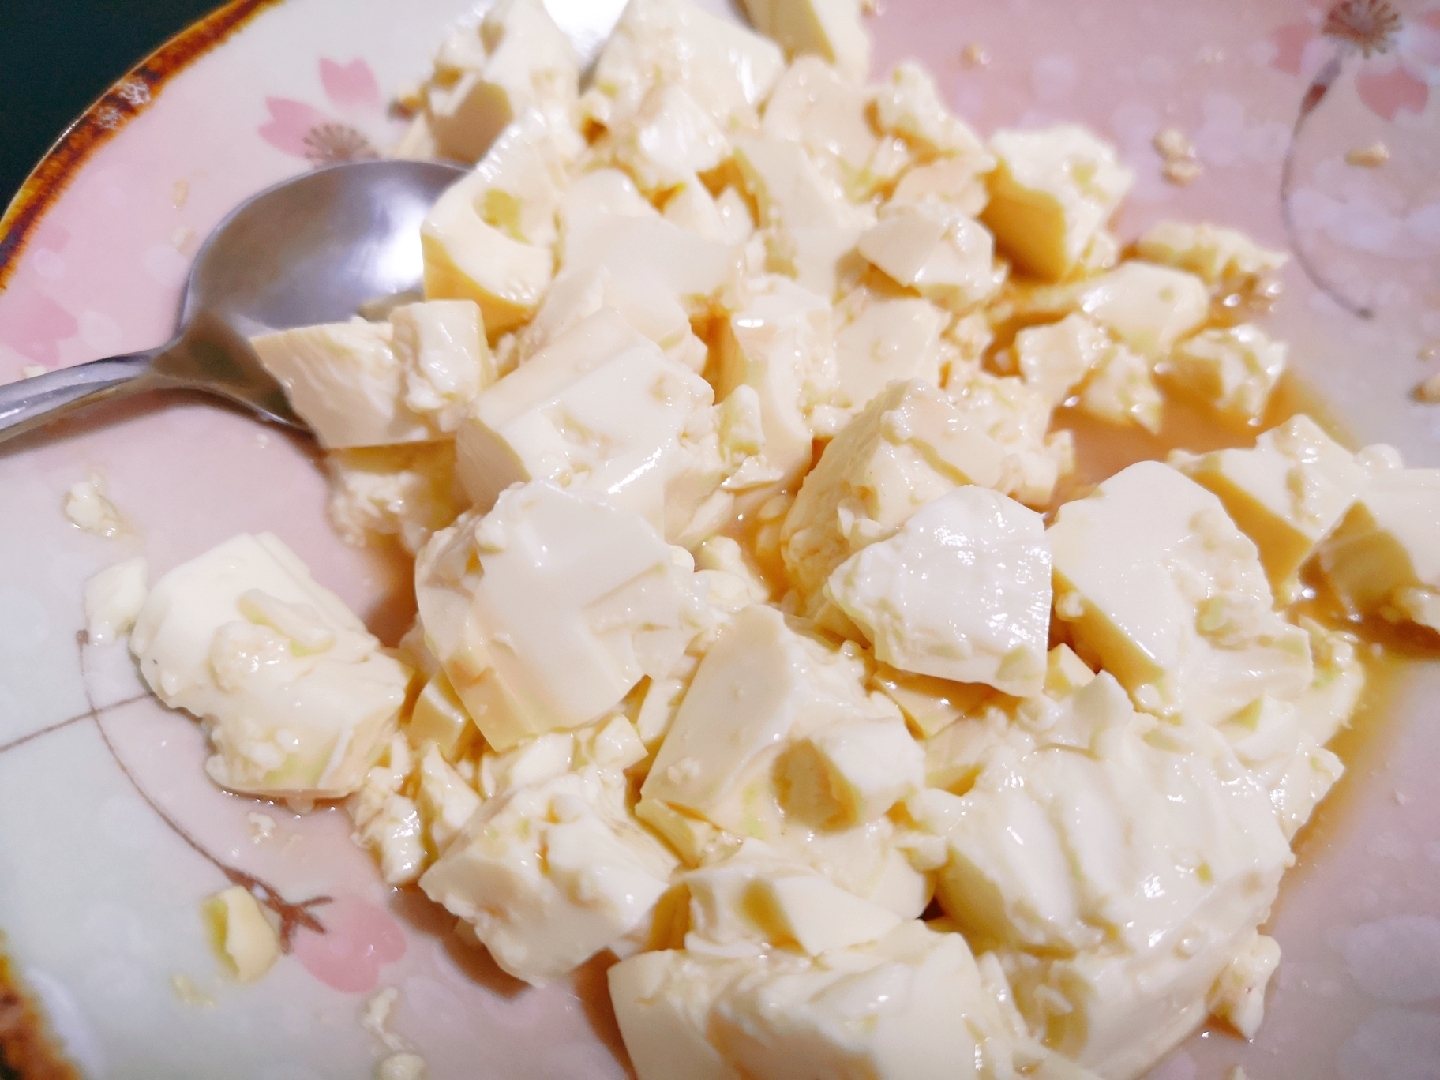 可能是你见过最简单的凉拌内酯豆腐